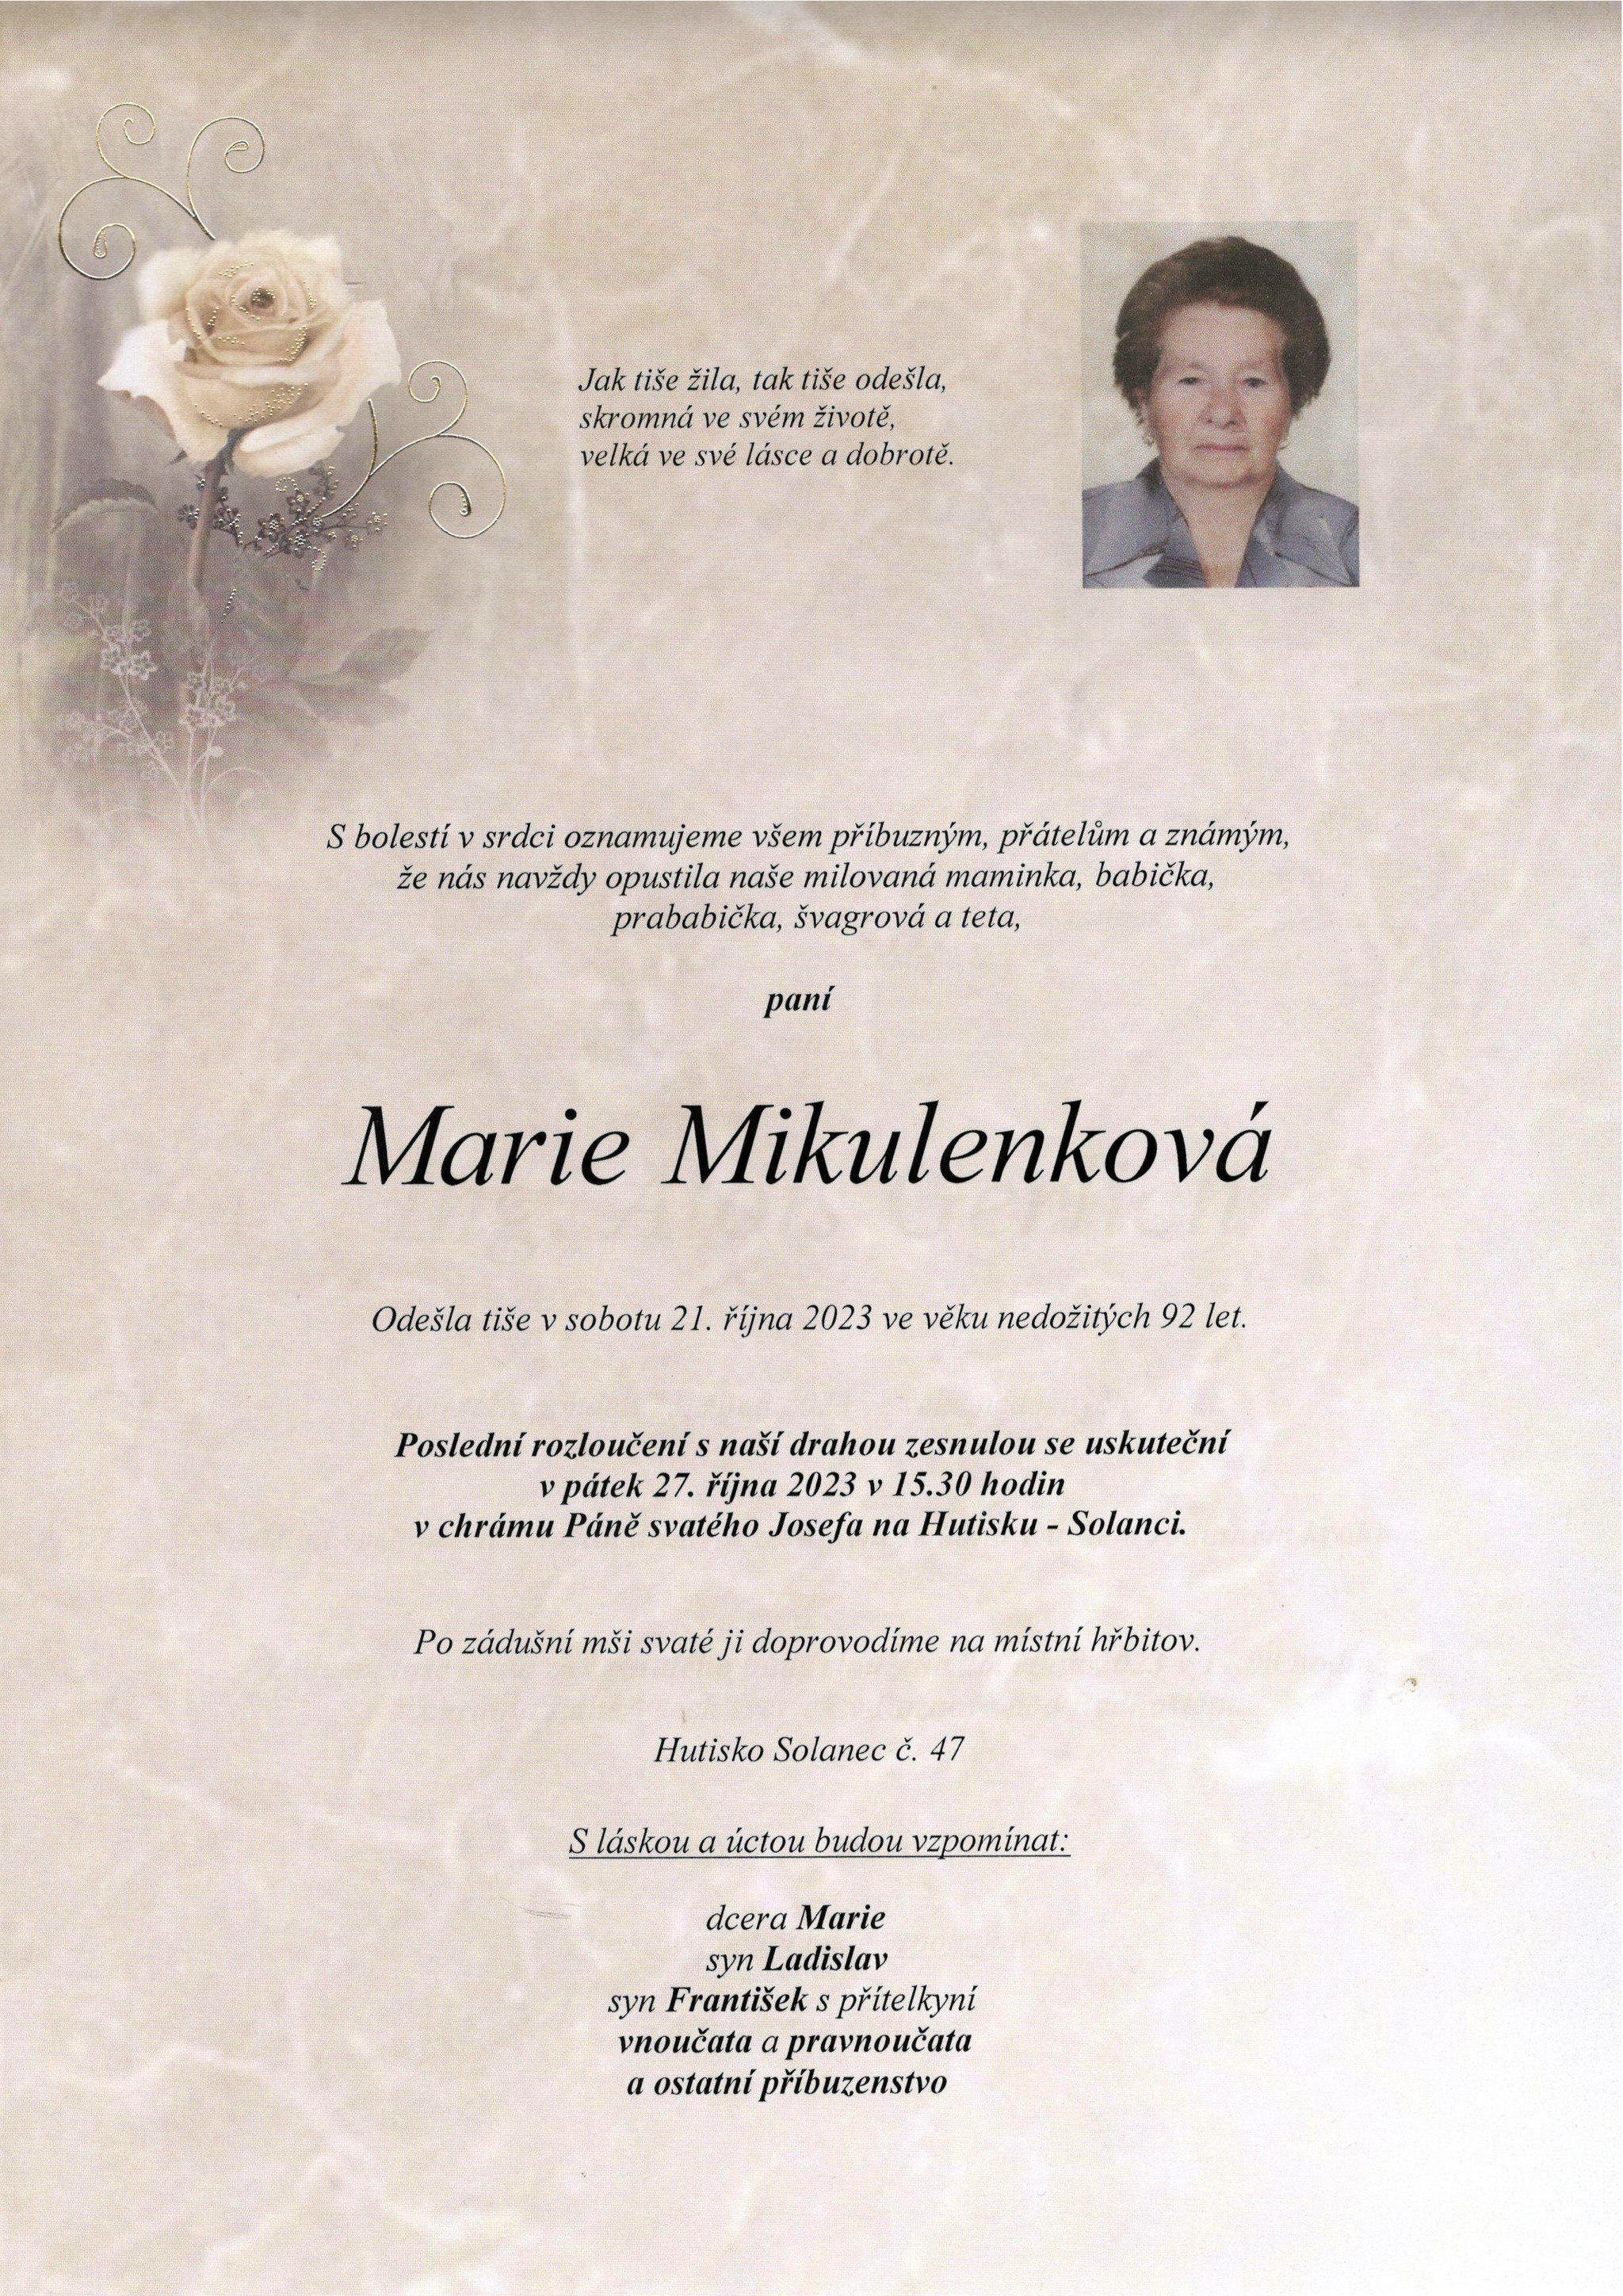 Marie Mikulenková